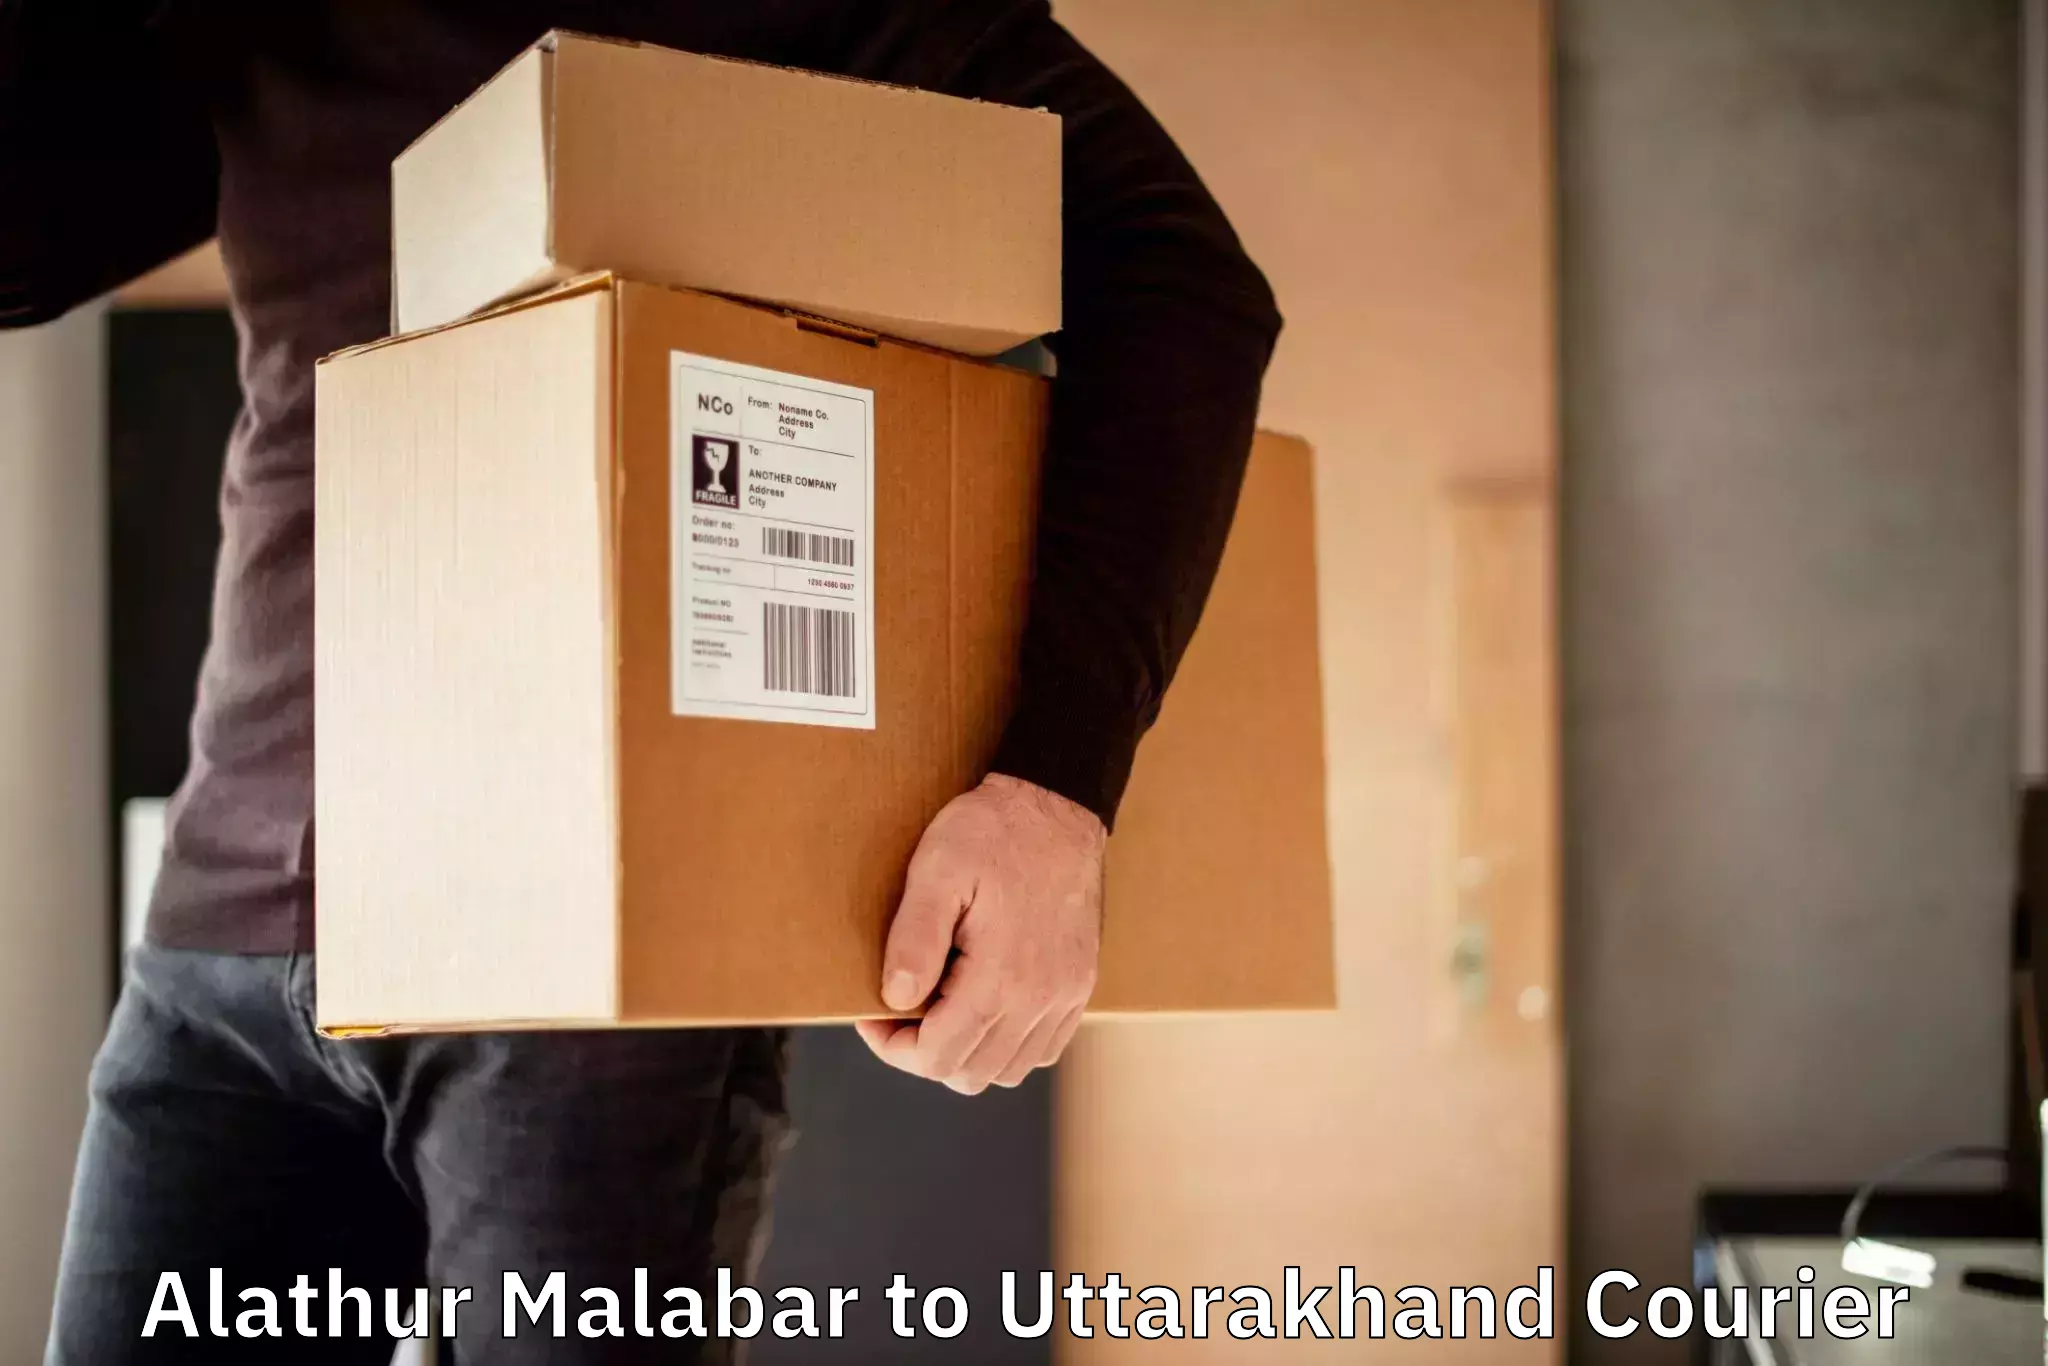 Next day courier Alathur Malabar to Karnaprayag